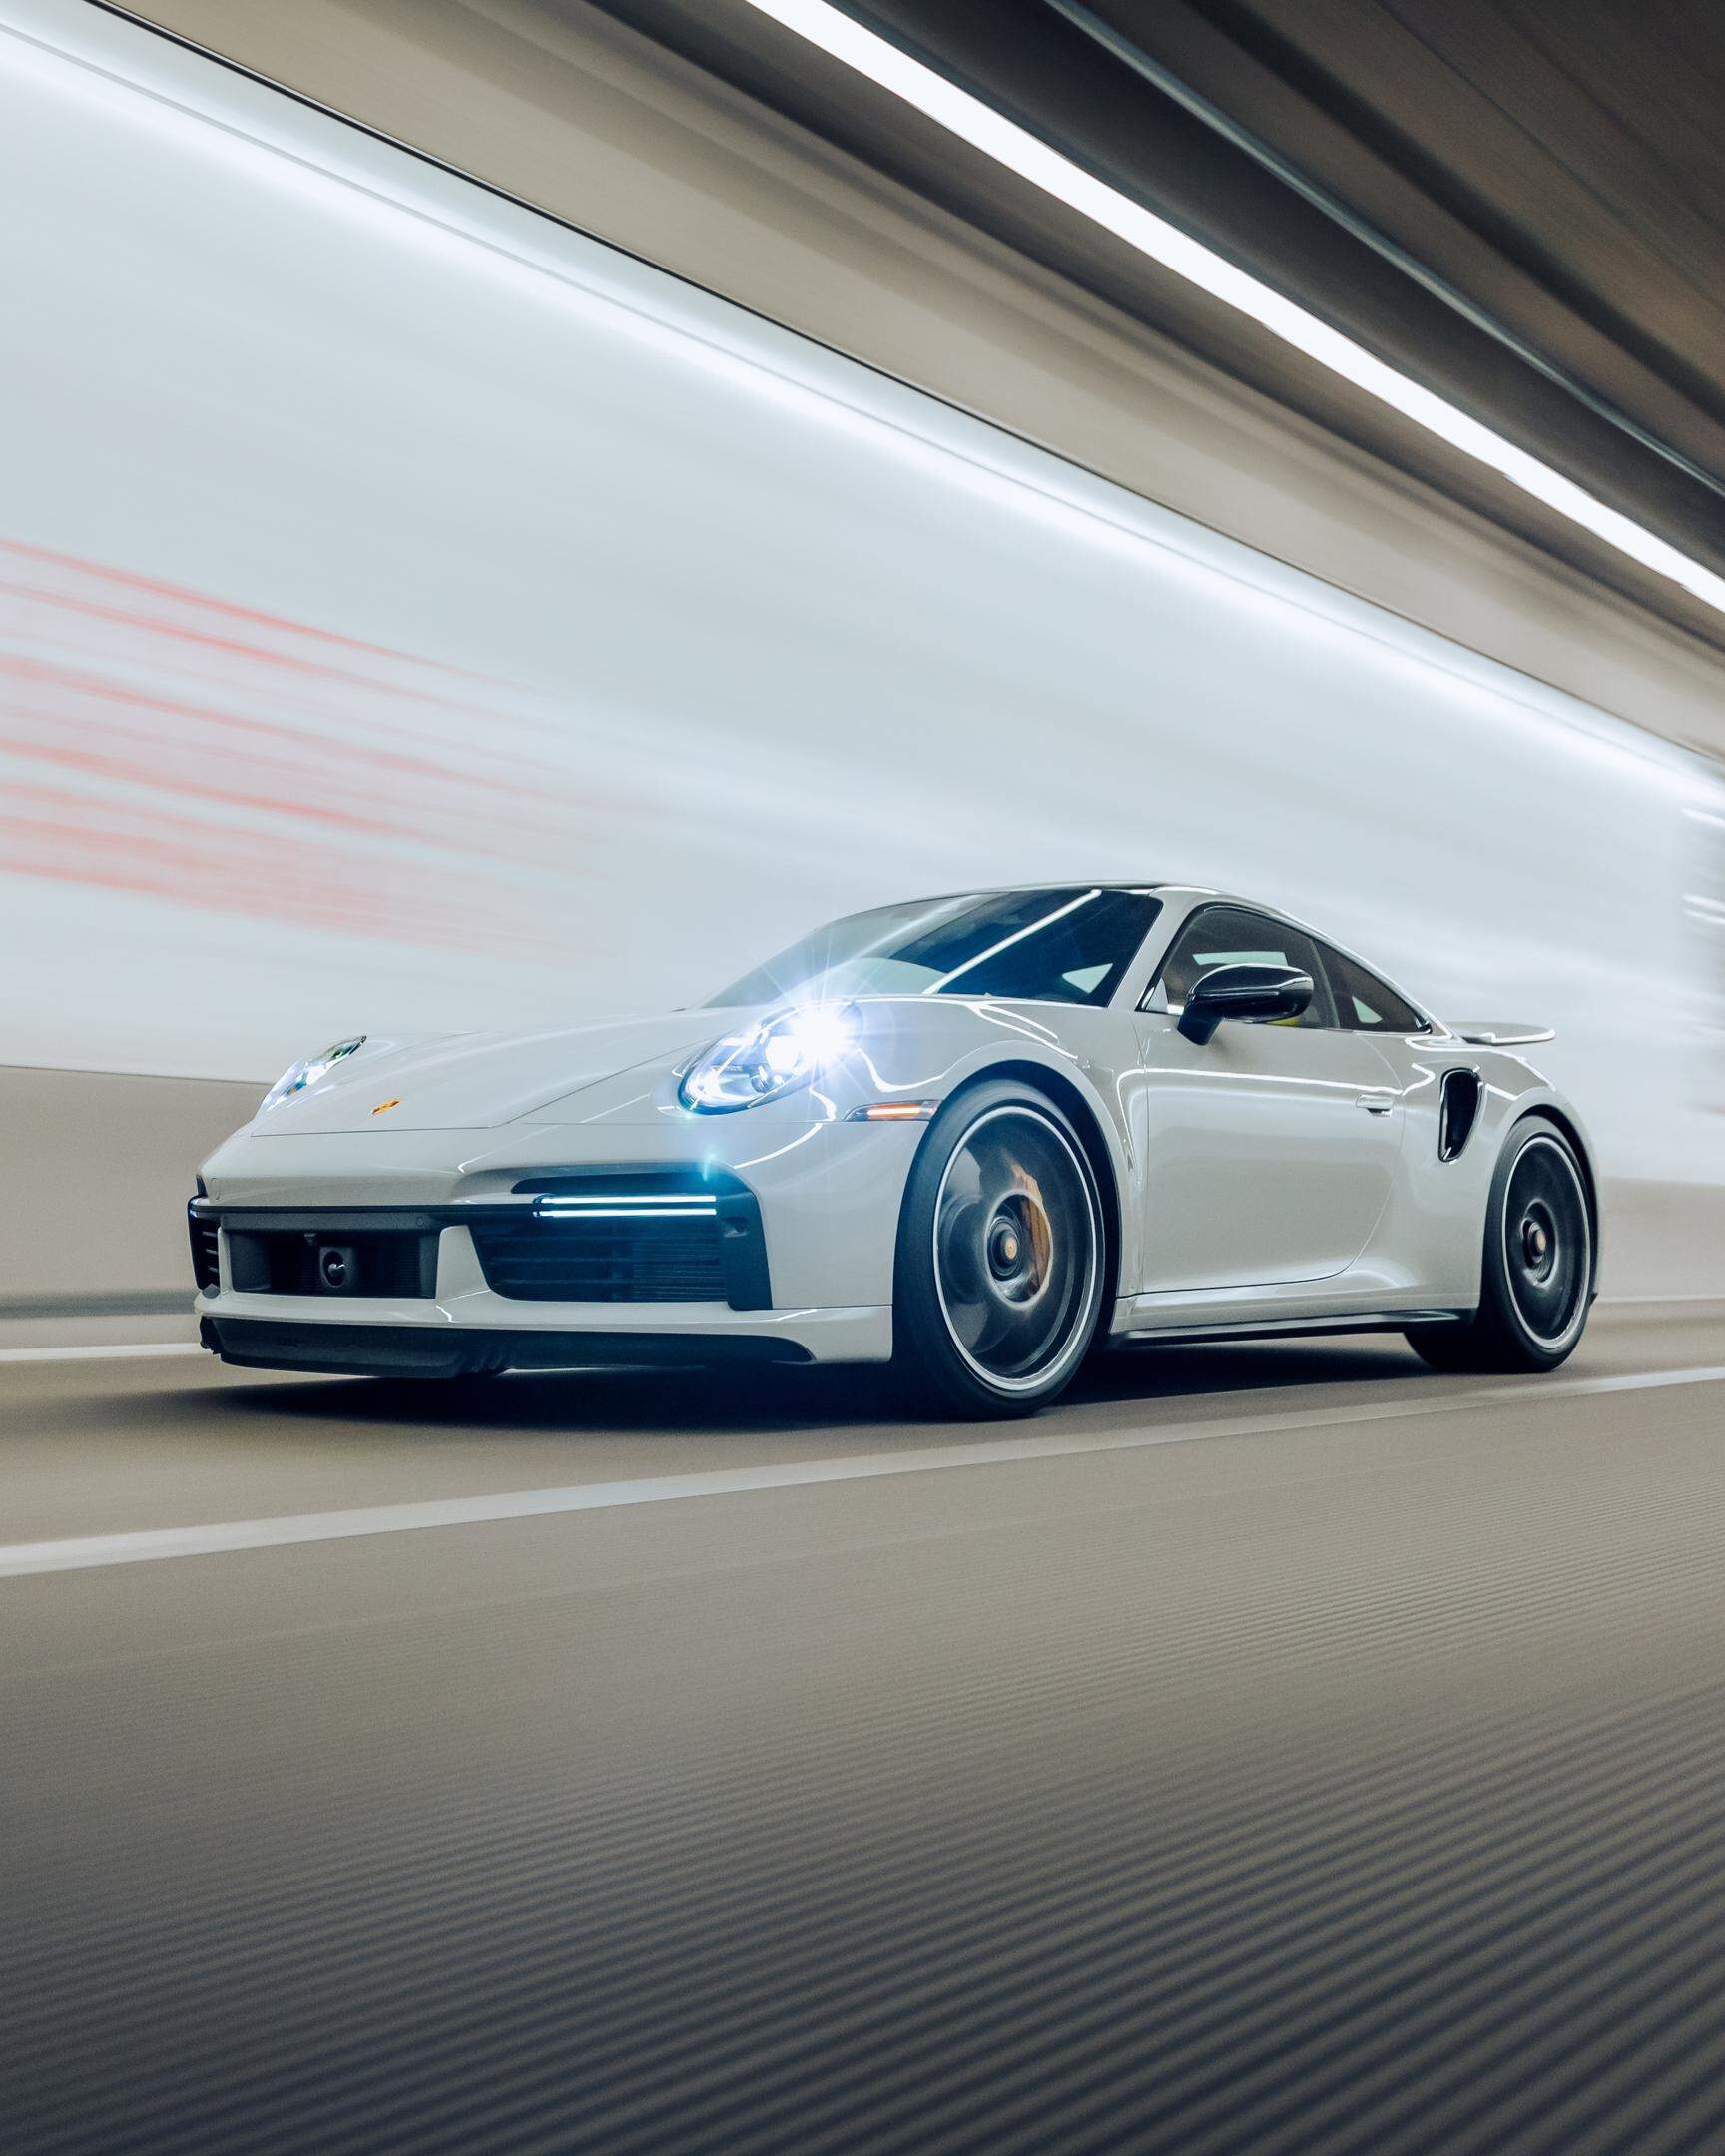 Das Nardò Tecnical Center (NTC) von Porsche mit seiner kreisrunden Hochgeschwindigkeitsstrecke soll ausgebaut werden. Umweltschützer wollen dem Vorhaben einen Riegel vorschoieben. 